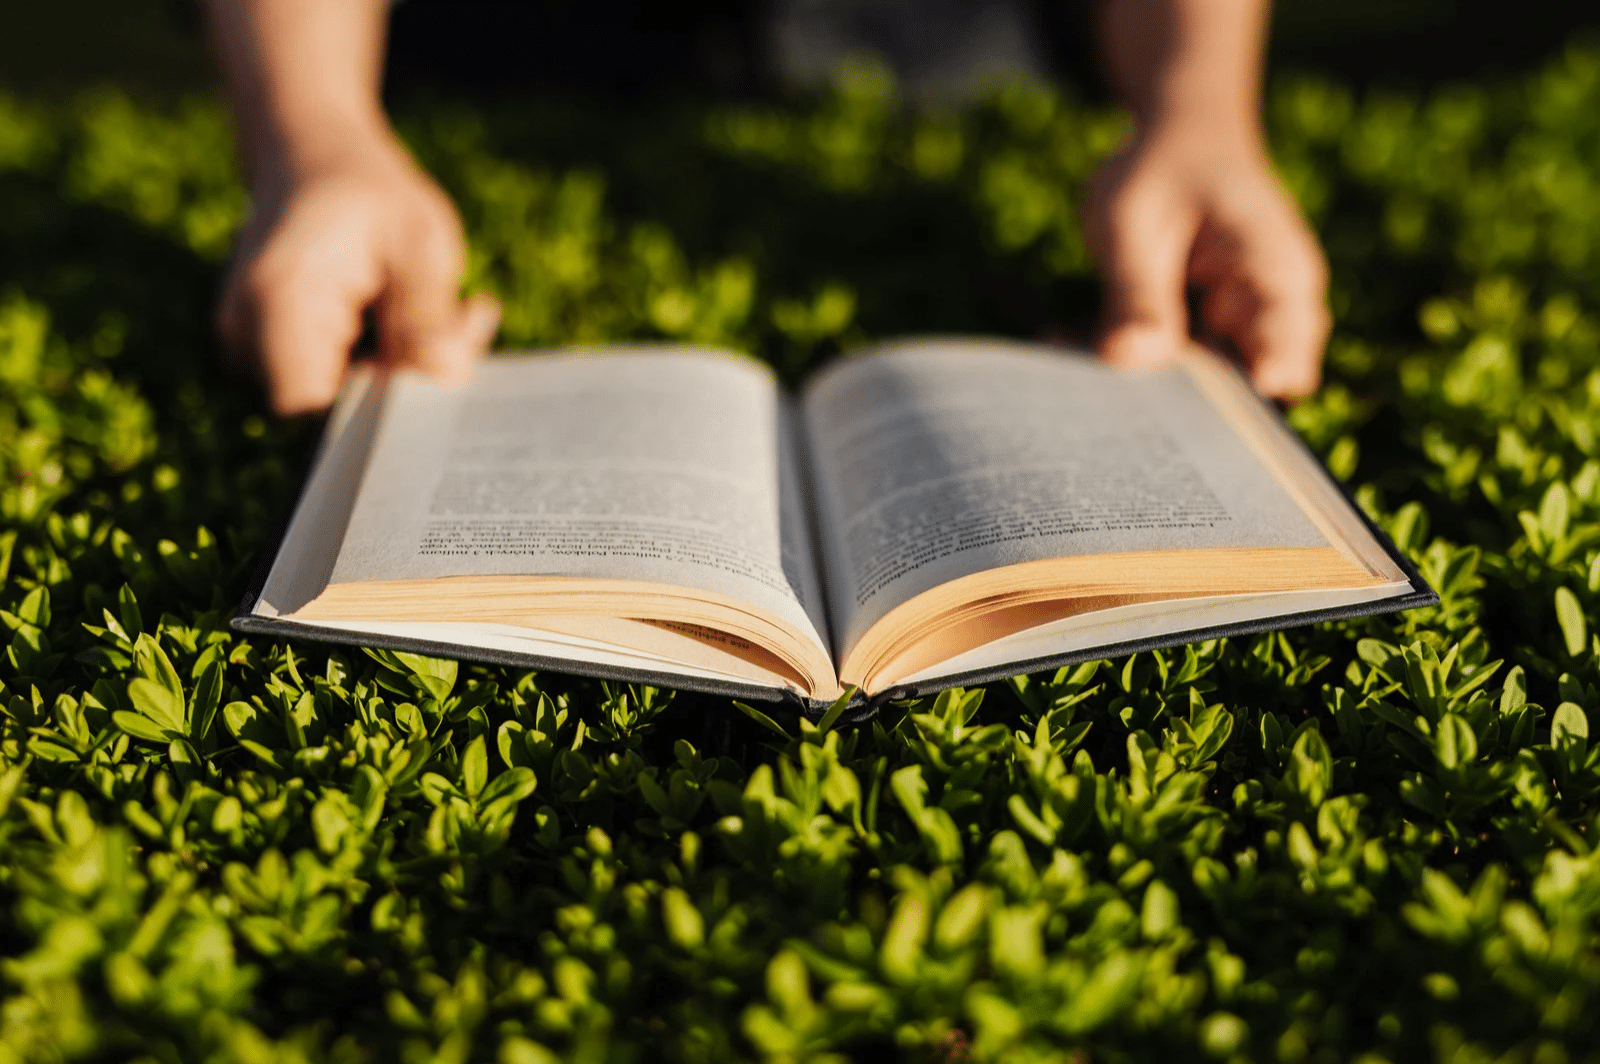 Ein Buch liegt auf Gras und wird von zwei Händen gehalten.